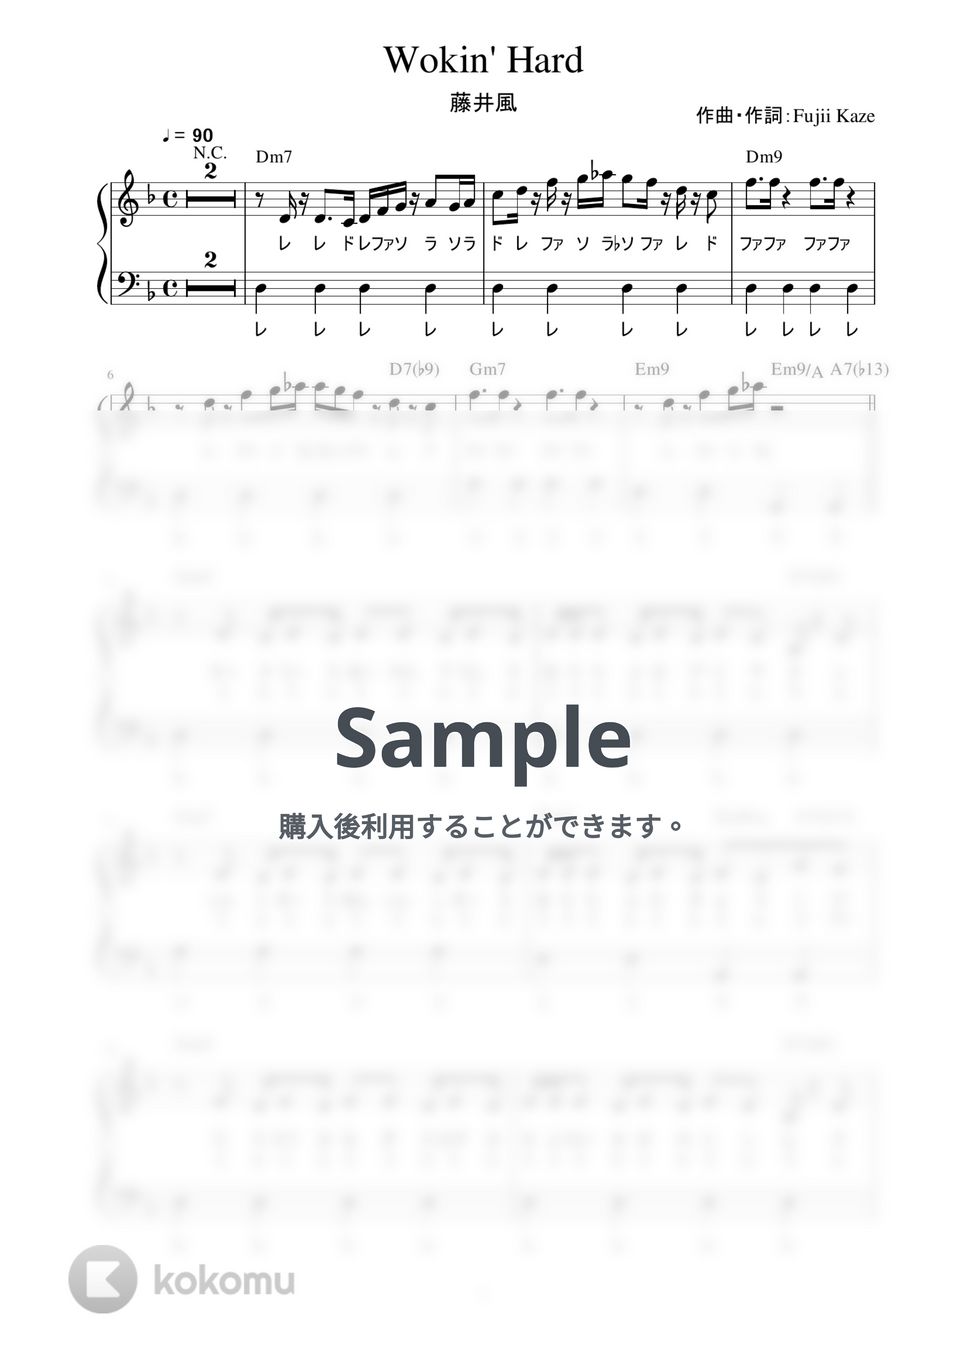 藤井風 - Wokin' Hard (かんたん / 歌詞付き / ドレミ付き / 初心者) by piano.tokyo